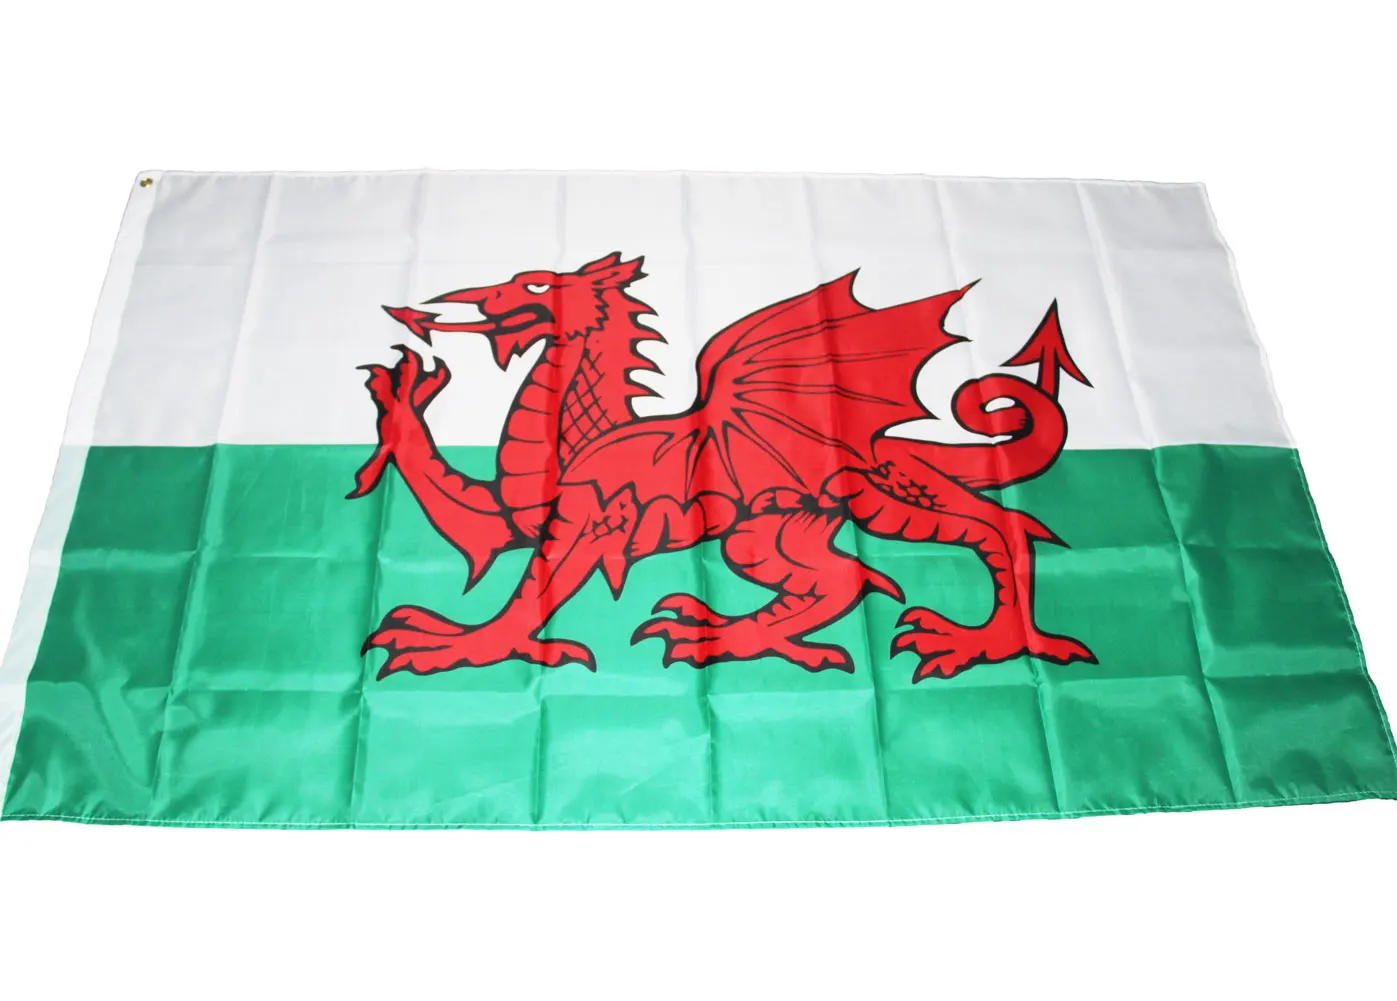 Орифлейм 90x150 см Флаг Уэльса валлийский красный дракон Камри Великобритания с английским флагом полиэстерная веревочная переключения большое Британский баннер